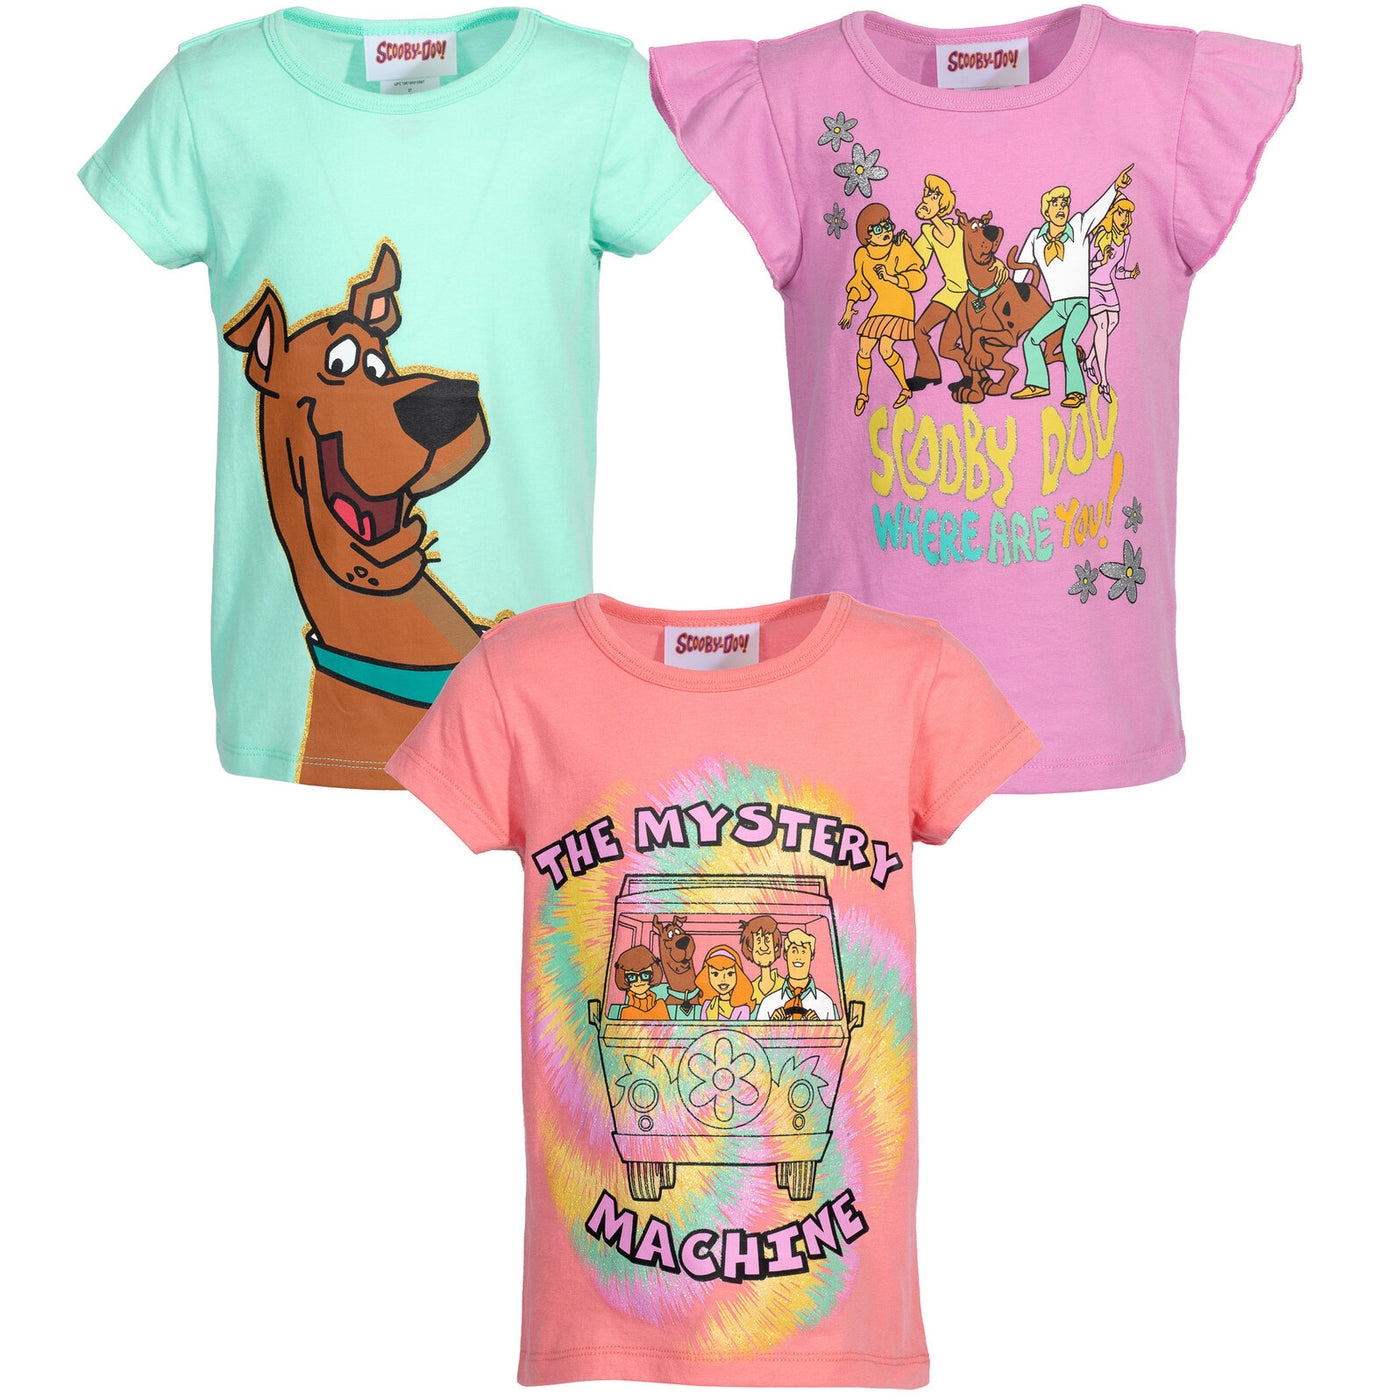 Warner Bros. Scooby Doo paquete de 3 camisetas gráficas